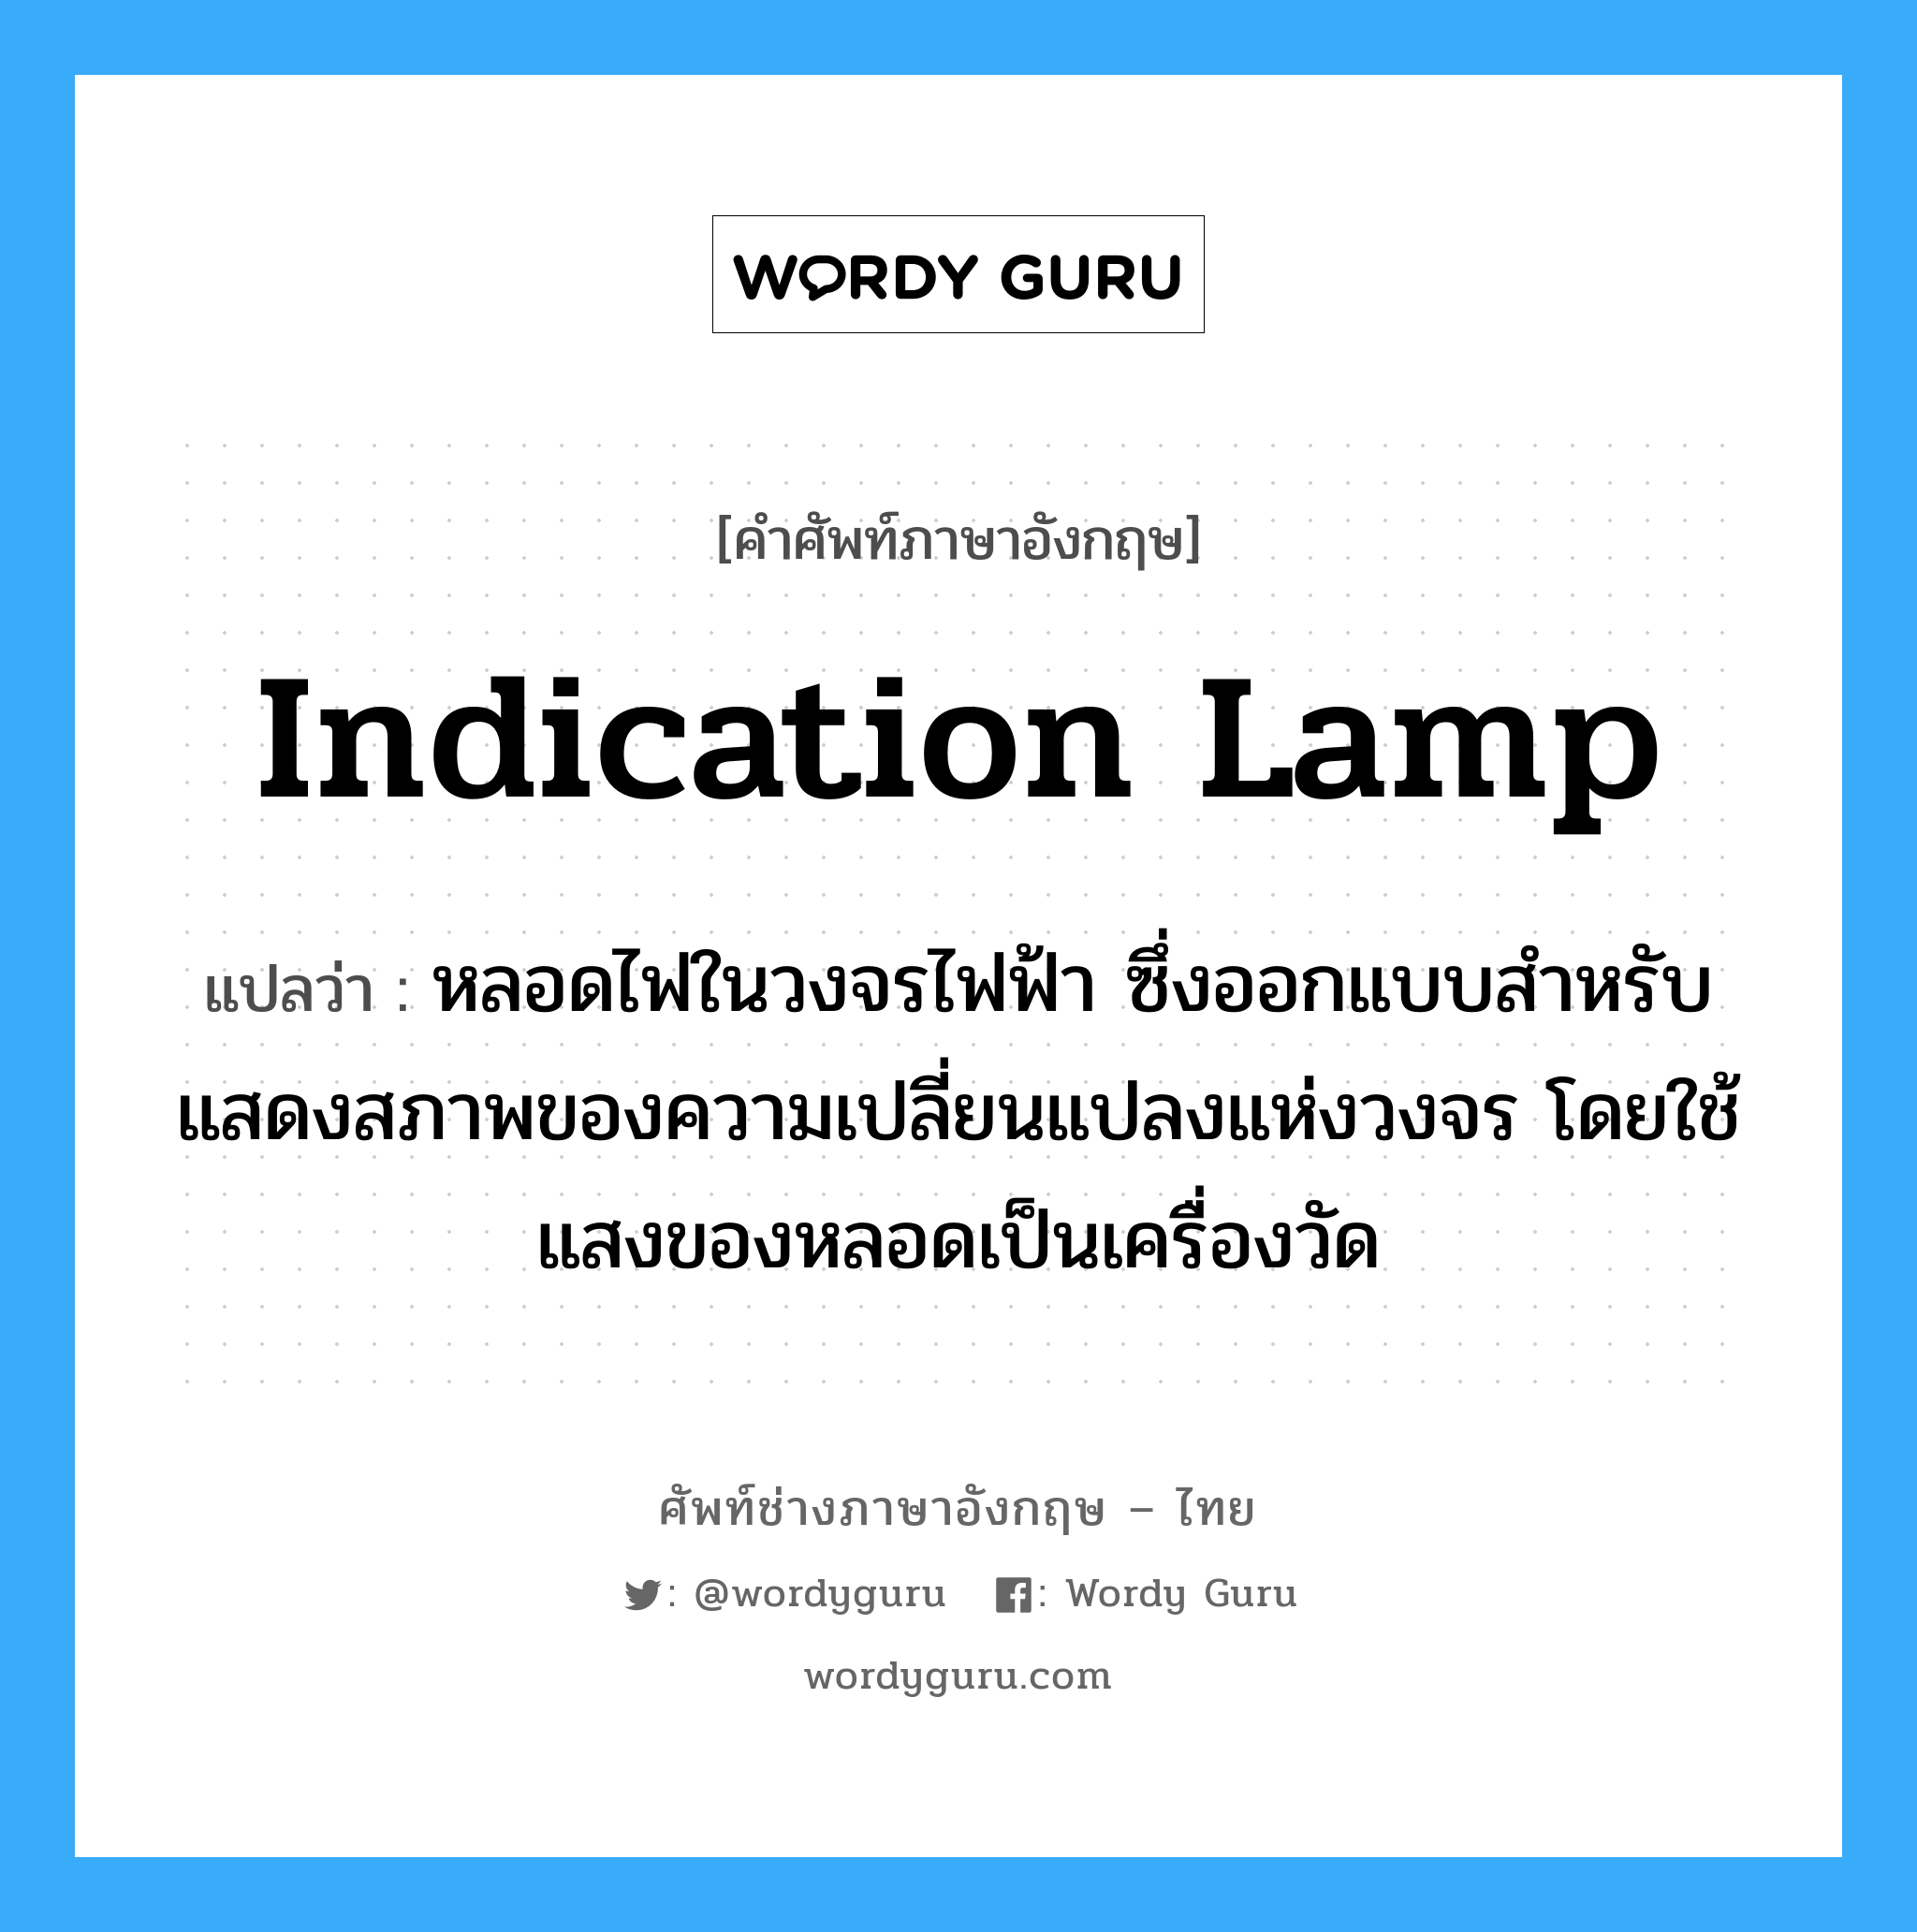 indication lamp แปลว่า?, คำศัพท์ช่างภาษาอังกฤษ - ไทย indication lamp คำศัพท์ภาษาอังกฤษ indication lamp แปลว่า หลอดไฟในวงจรไฟฟ้า ซึ่งออกแบบสำหรับแสดงสภาพของความเปลี่ยนแปลงแห่งวงจร โดยใช้แสงของหลอดเป็นเครื่องวัด